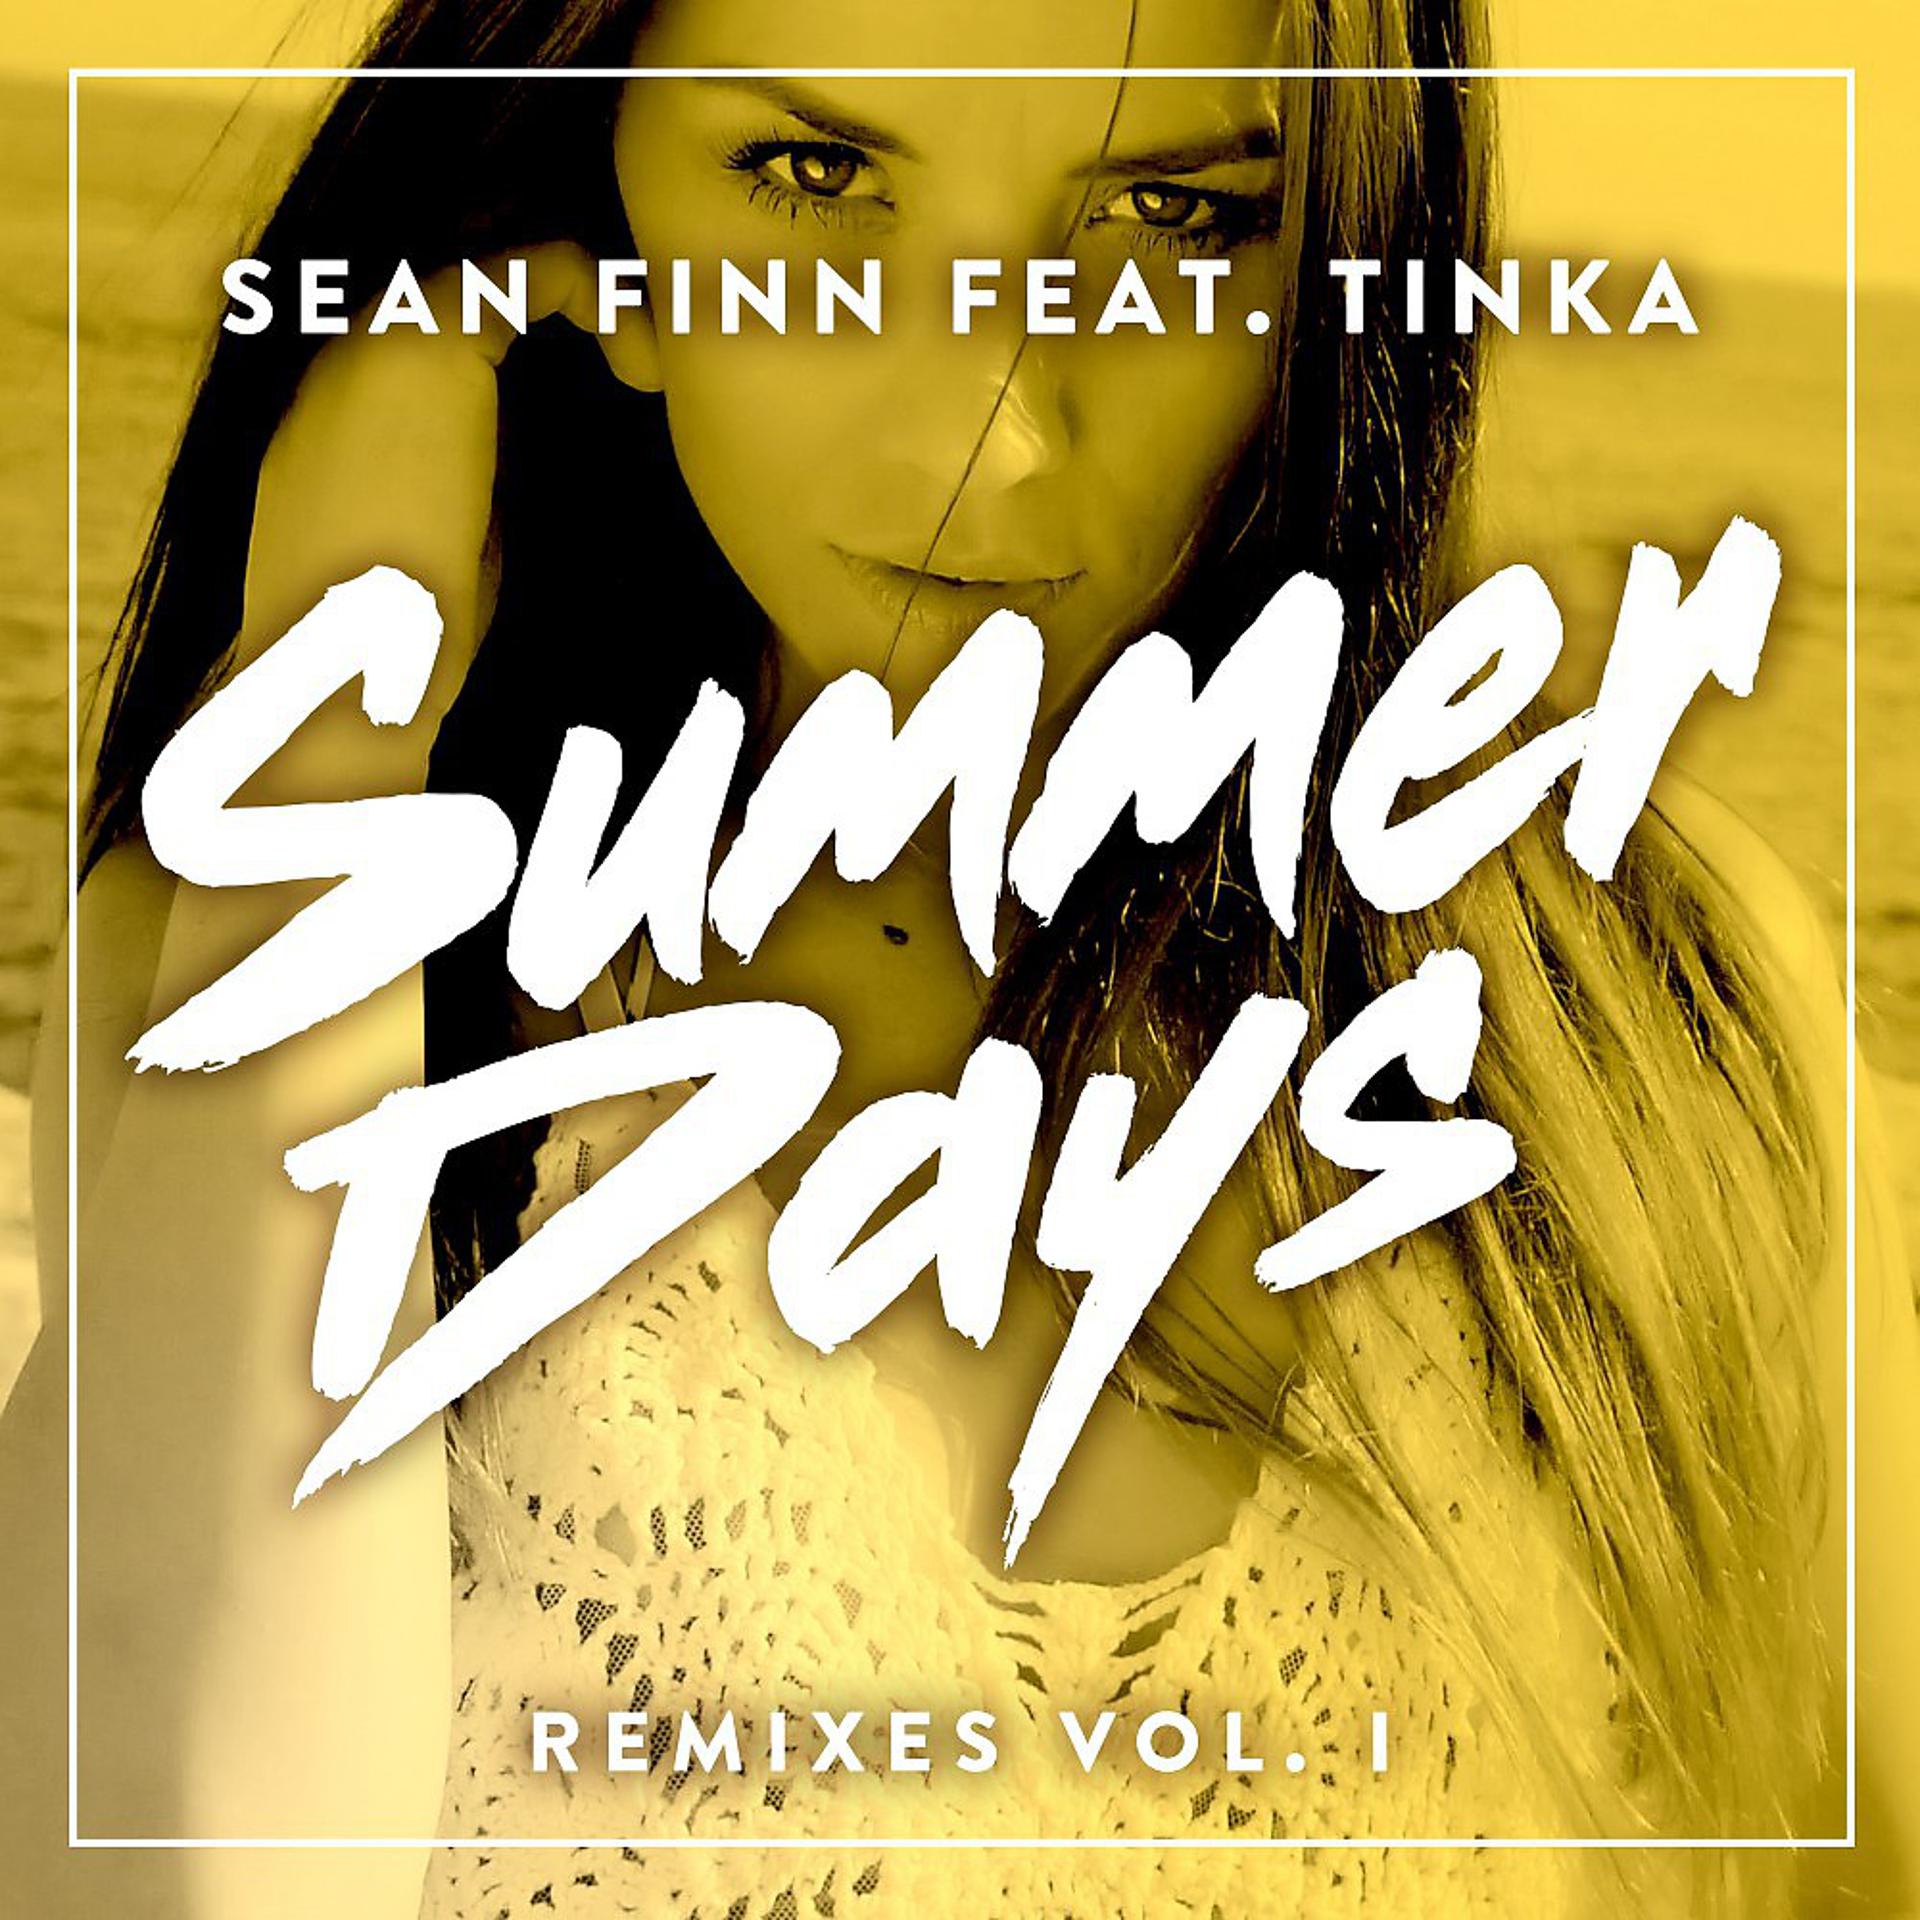 Sean Finn Summer Days. Sean Finn feat. Tinka Summer Days. Sean Finn feat. Tinka tinka — Summer Days. Sean Finn feat. Tinka Summer Days Ben delay Remix.